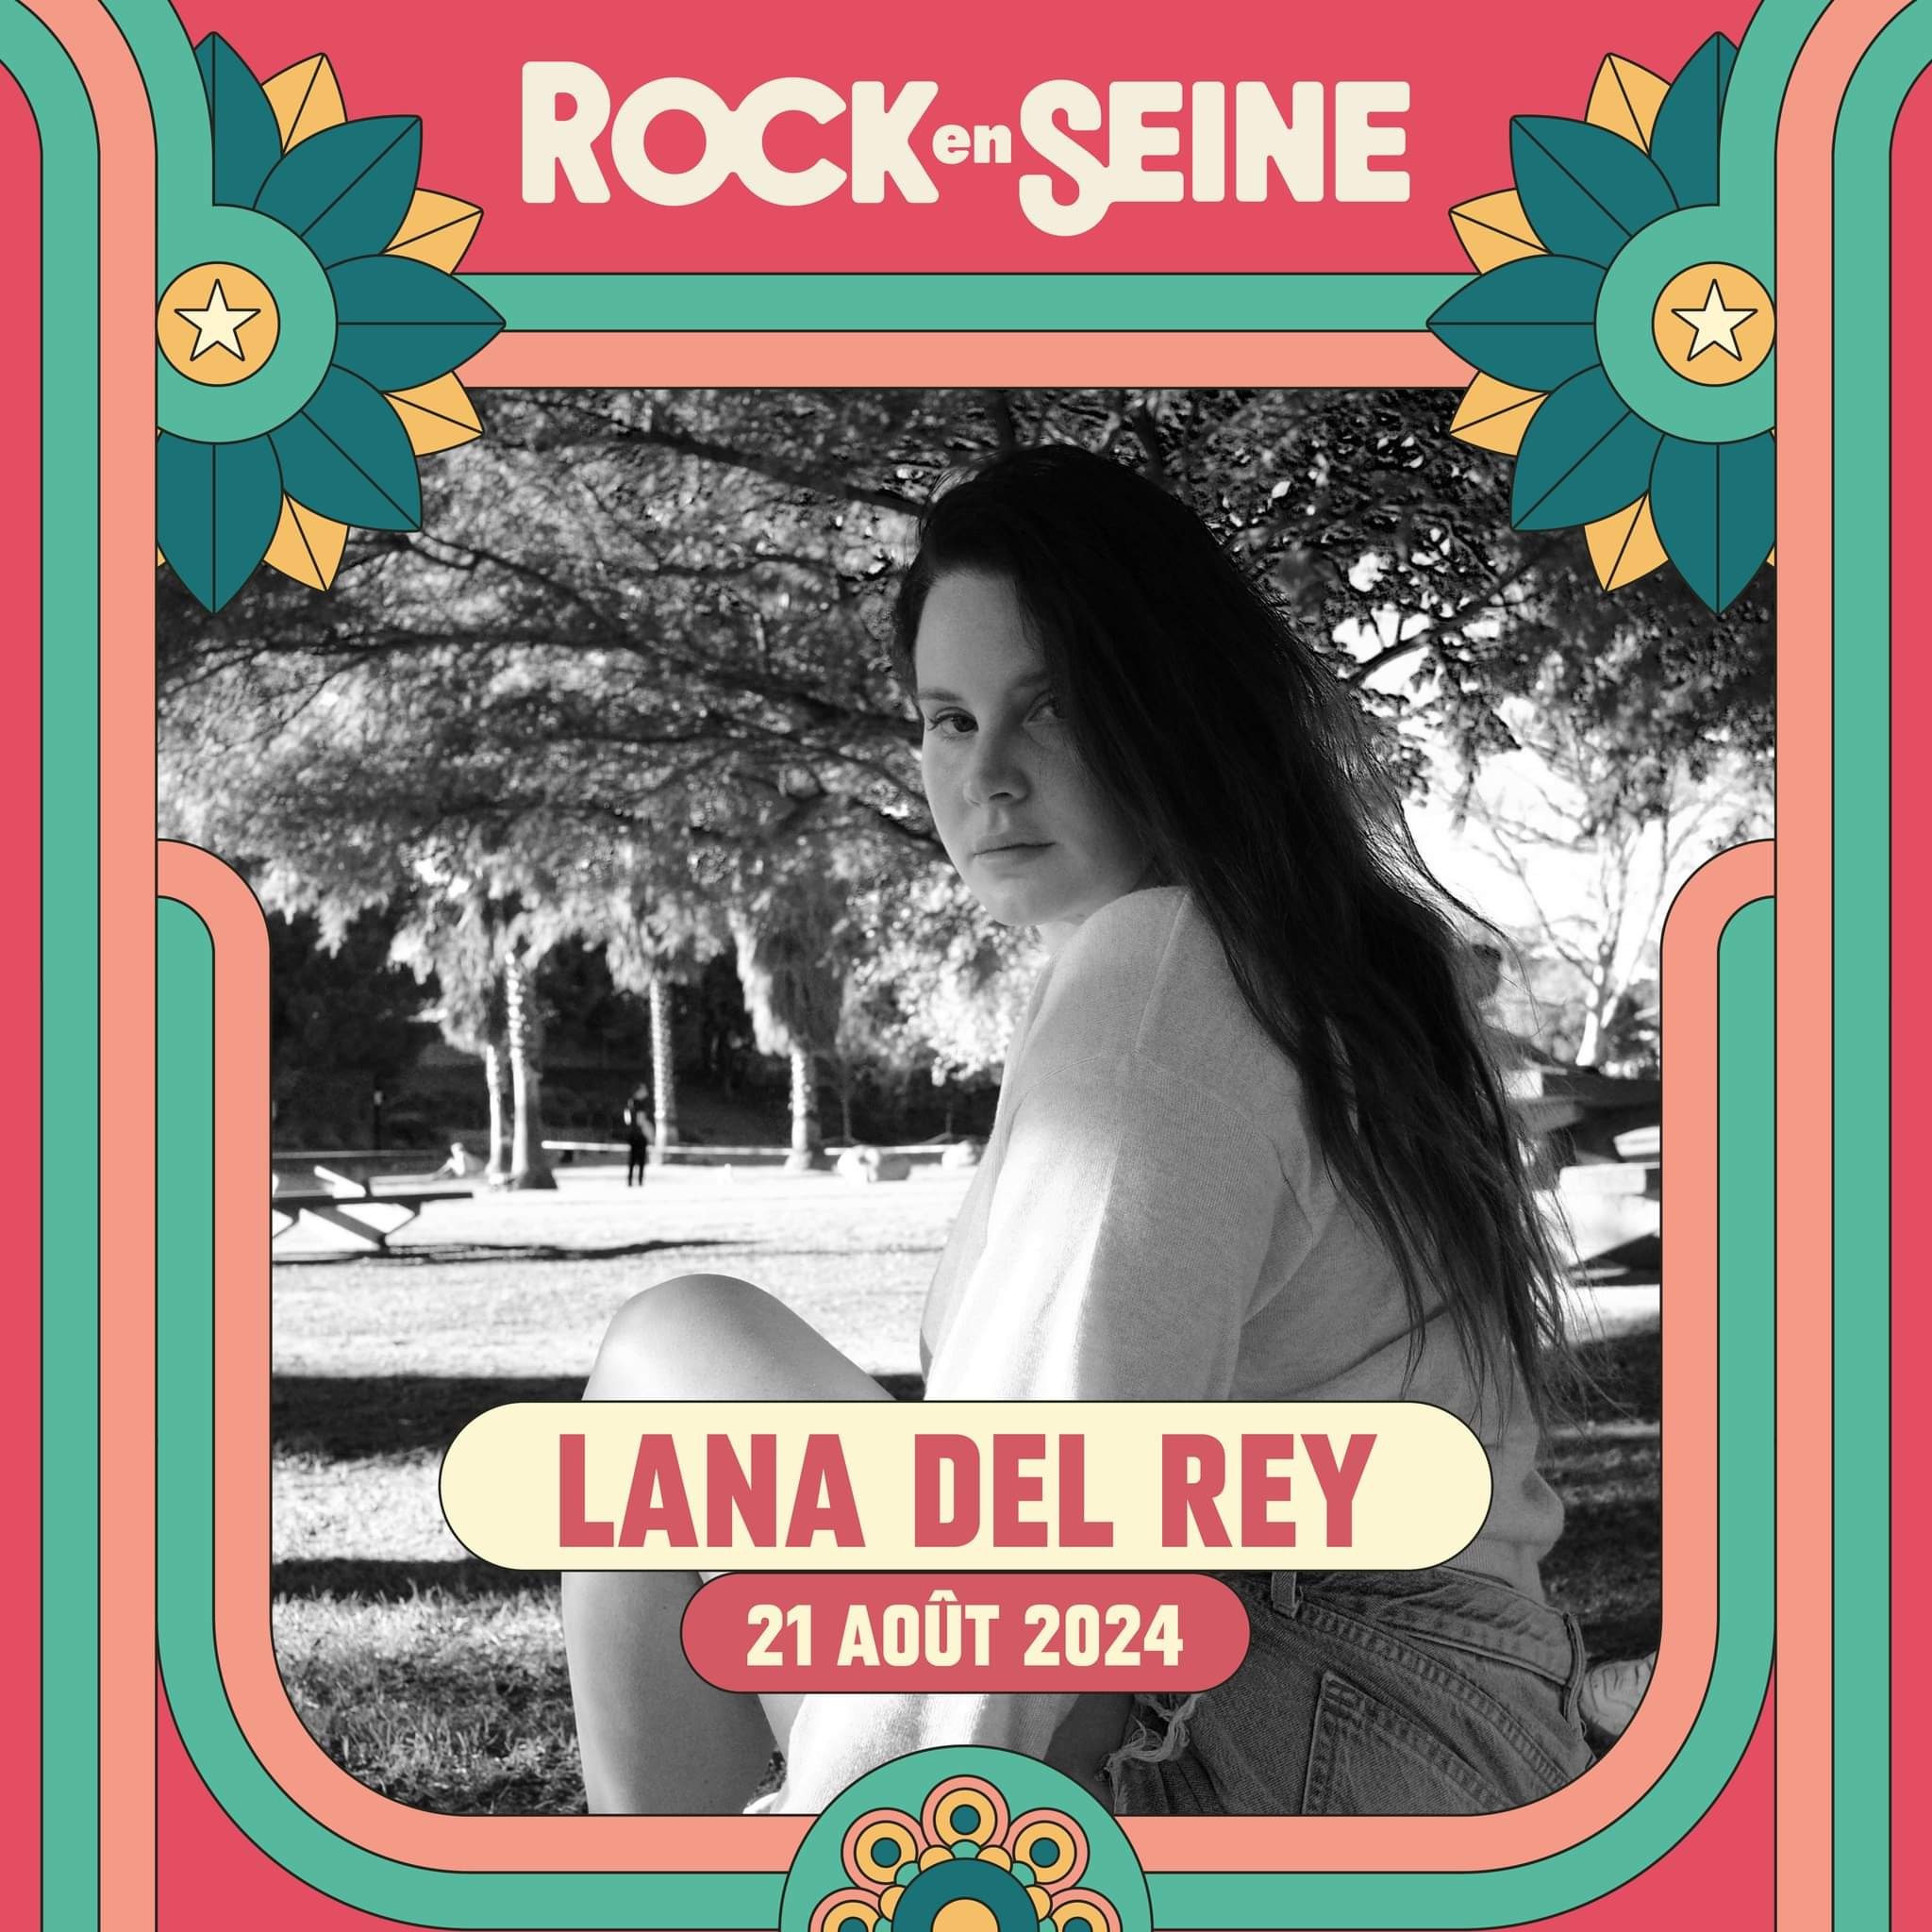 Rock en Seine 2024 : Lana Del Rey at Domaine national de Saint-Cloud Tickets